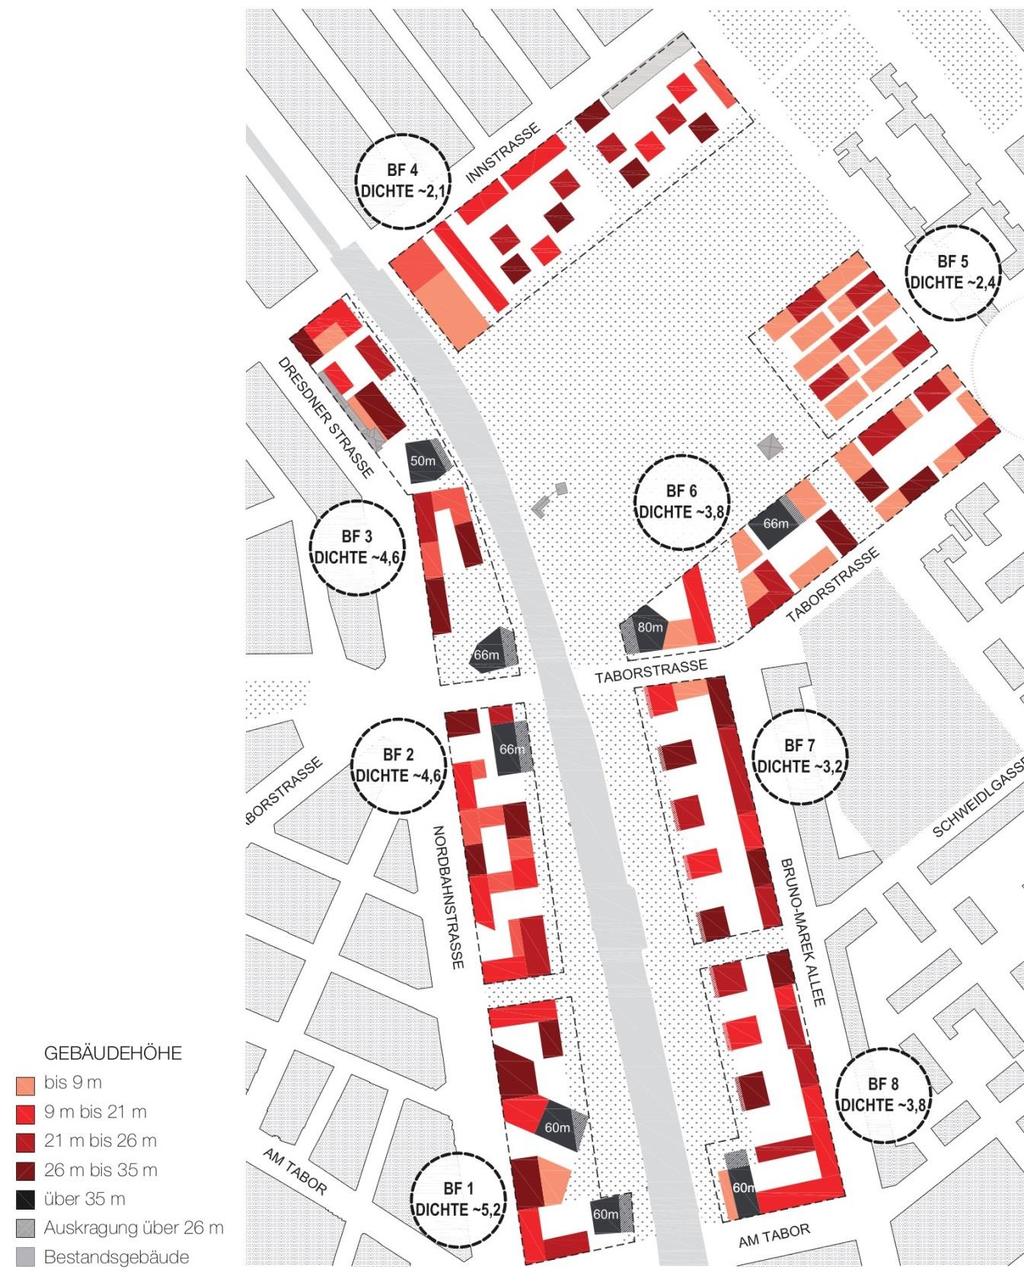 Bebauungsszenario gem. Handbuch zum städtebaulichen Leitbild Nordbahnhof 2014 (Quelle: Studiovlay) Mit dem vorliegenden Entwurf zum Flächenwidmungs- und tlw. Bebauungsplan Nr.